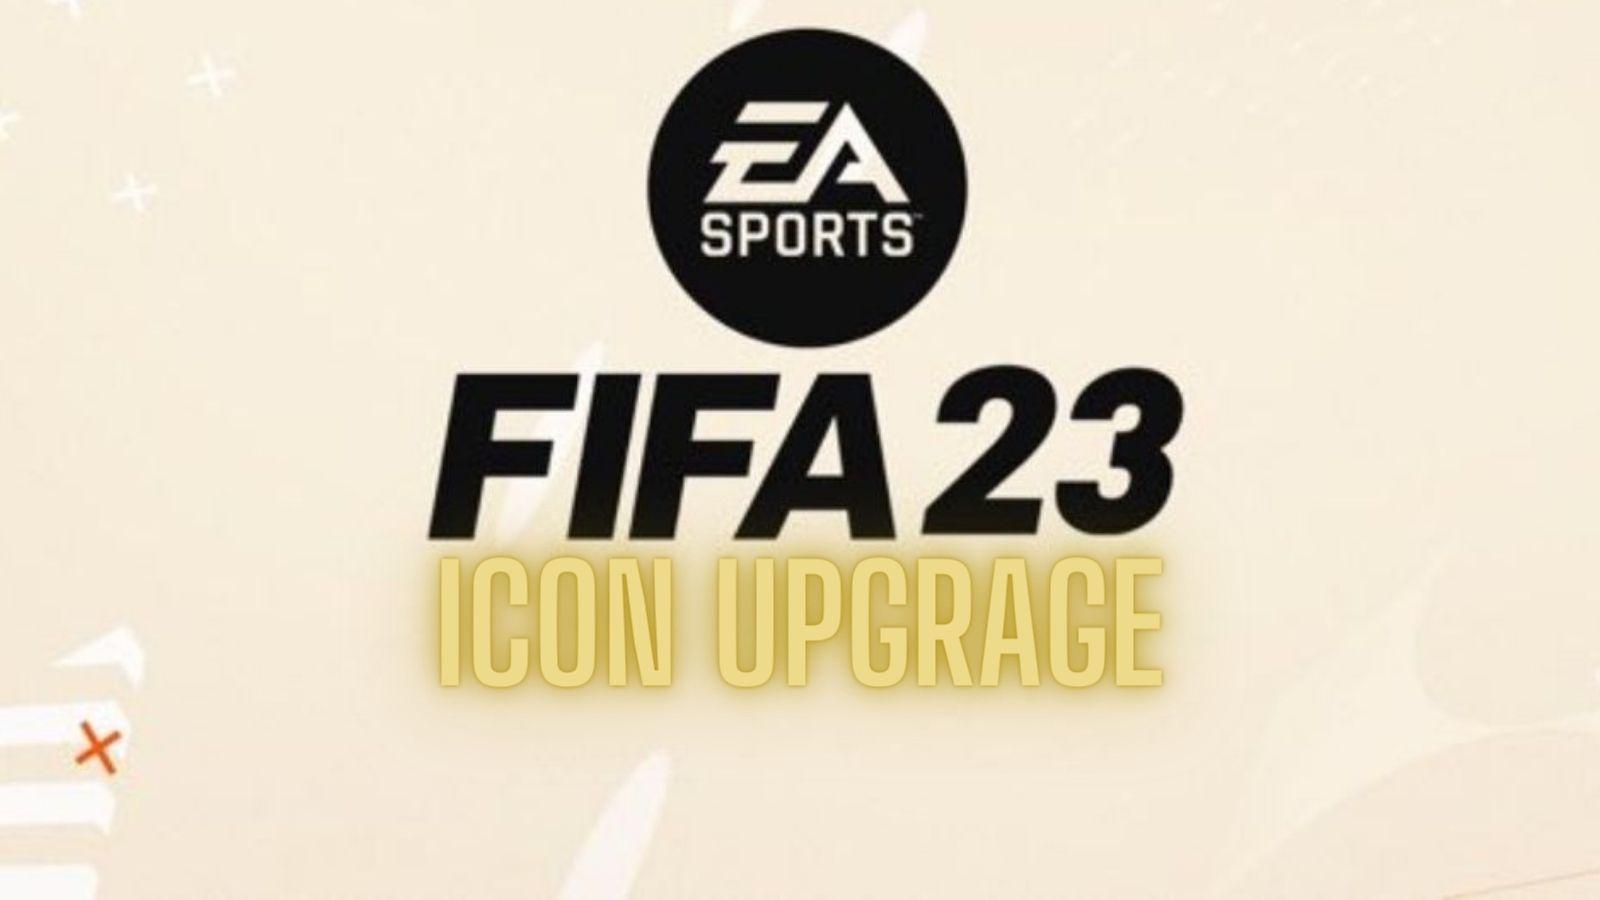 FIFA 23 Max. 86 Icon upgrade